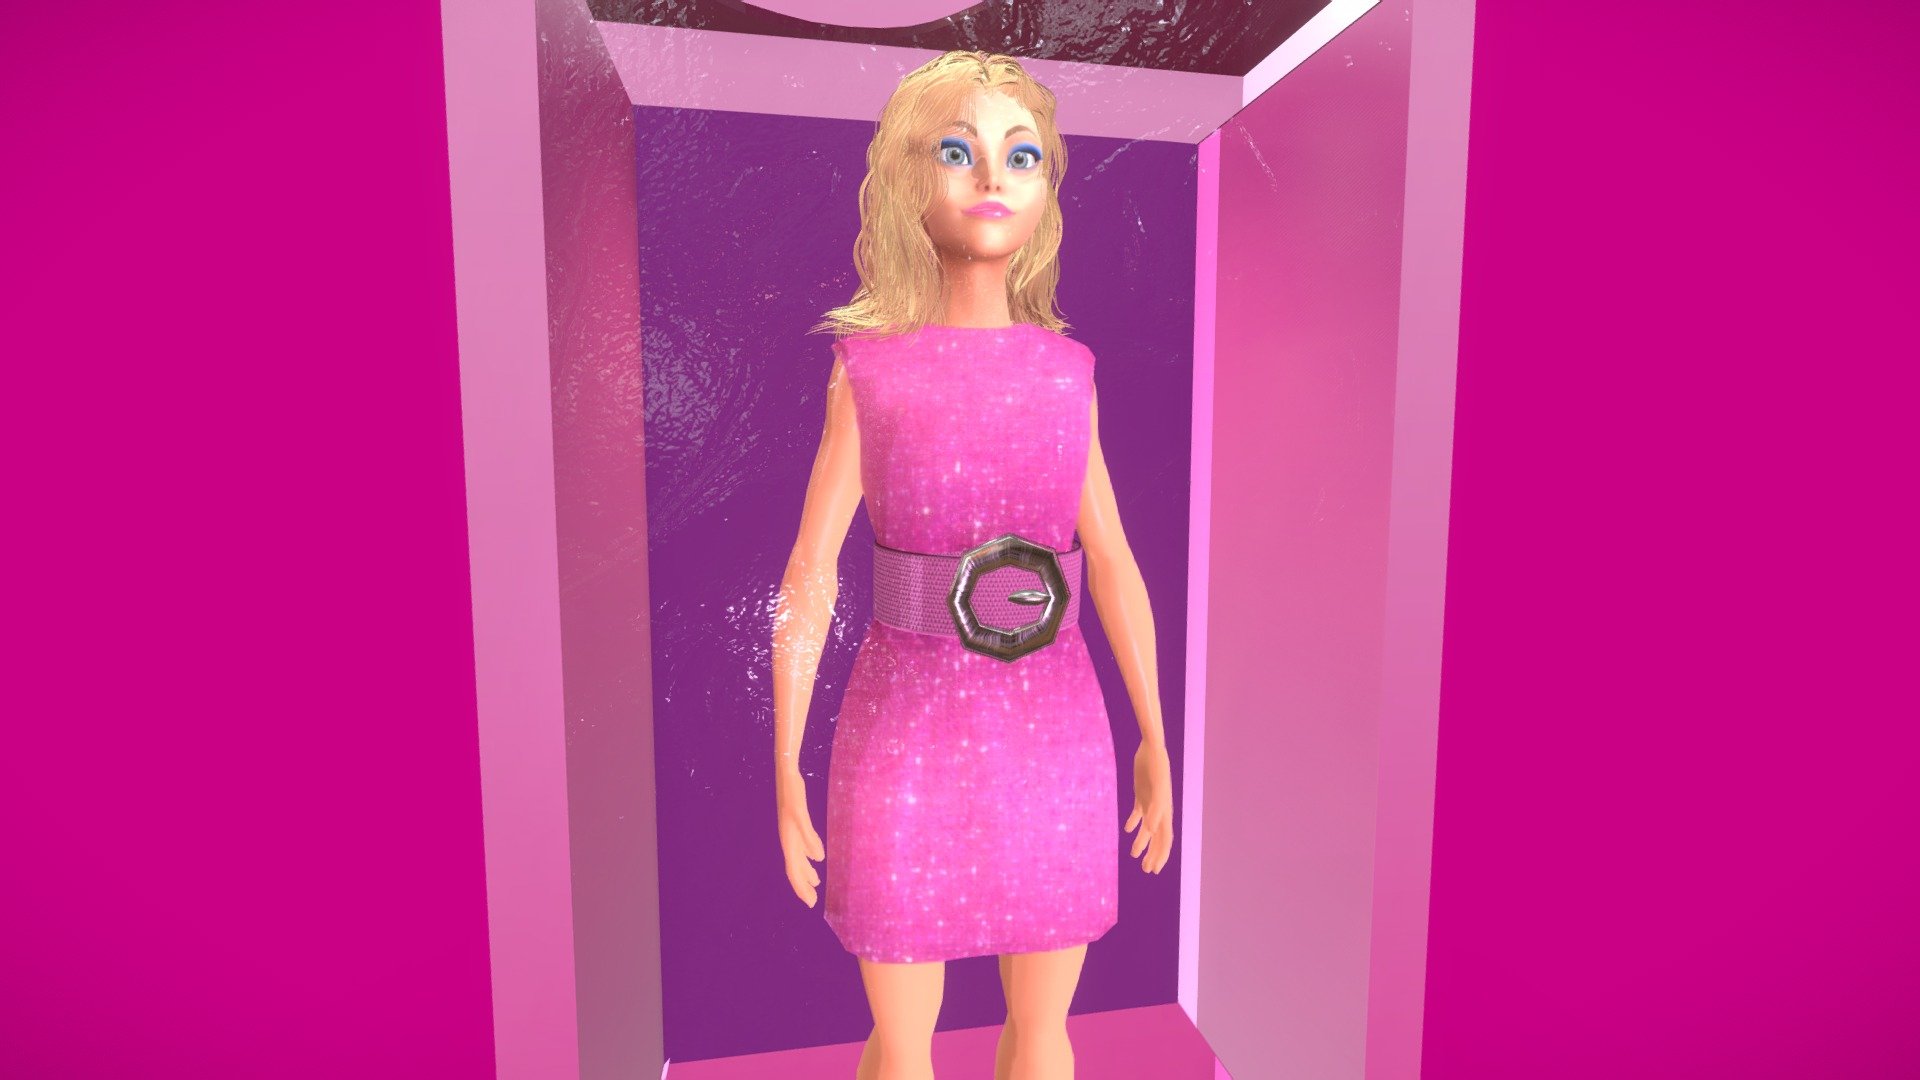 My Doll Barbie Style - My Doll Barbie Style - Buy Royalty Free 3D model by franckross 3d model